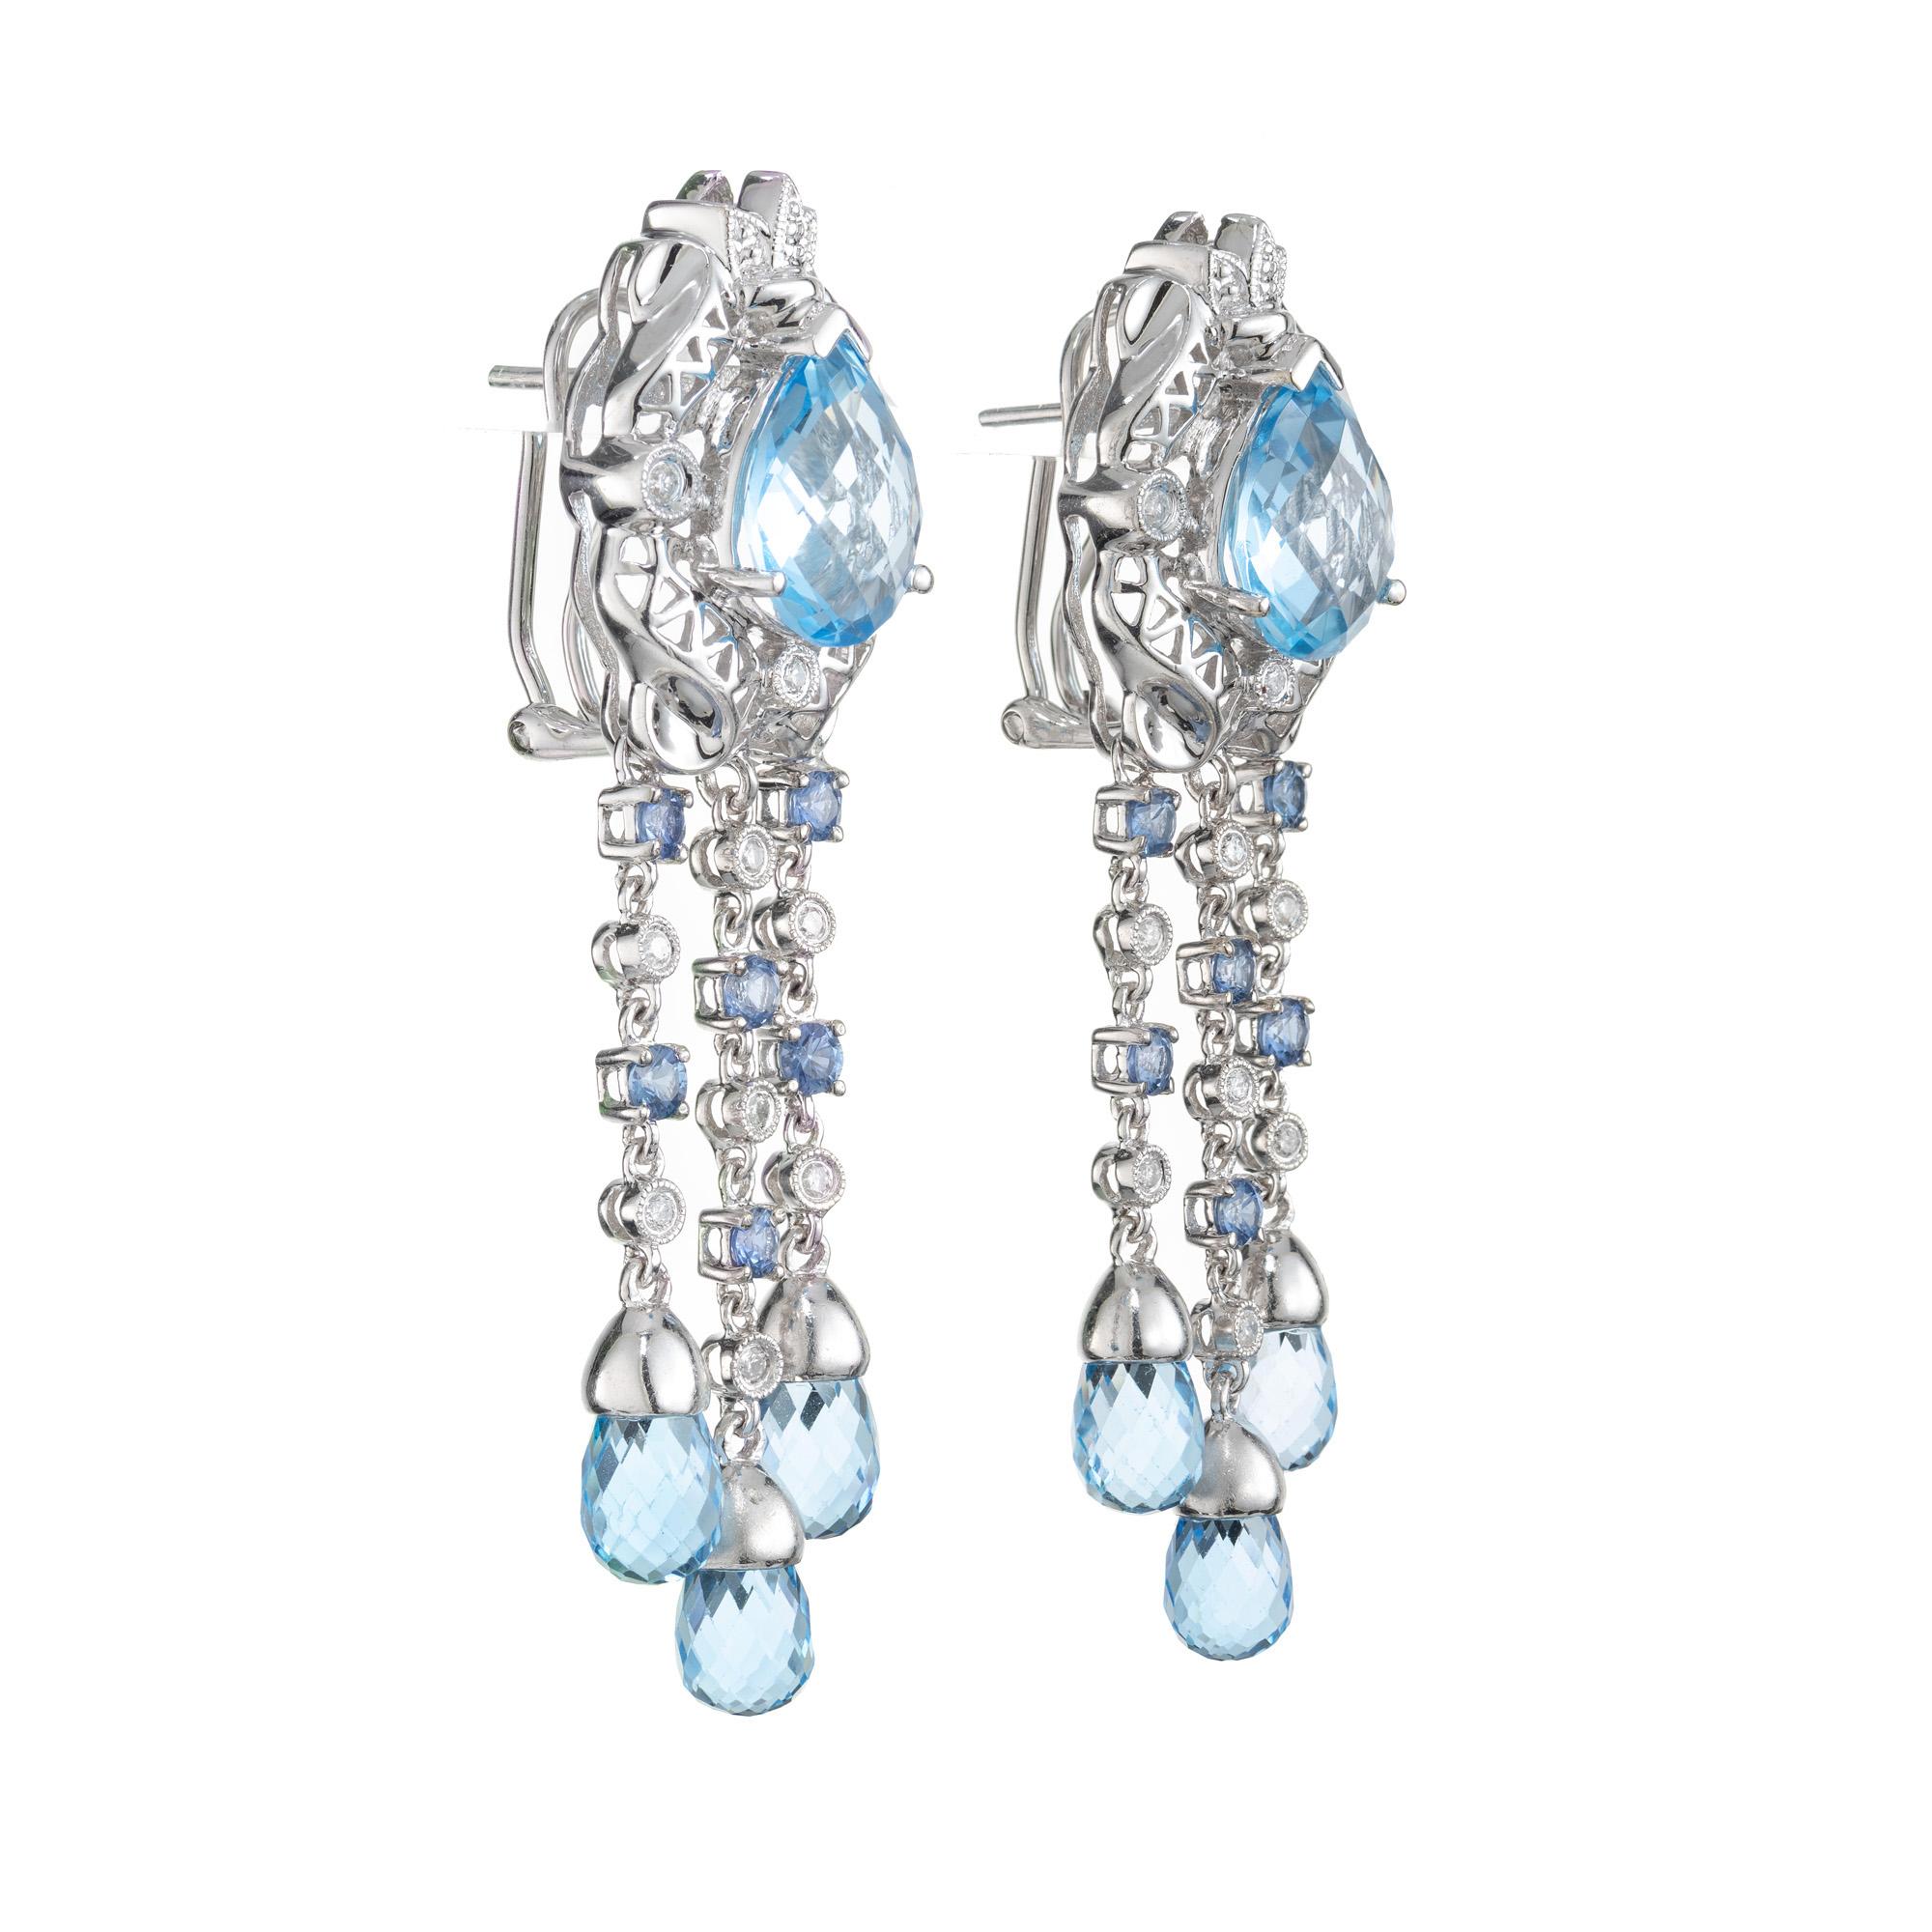 Réalisées à la perfection, ces boucles d'oreilles pendantes sont ornées de superbes topazes bleues magnifiquement mises en valeur par d'éblouissants diamants et saphirs, dans une monture en or blanc 14 carats. Au centre de chacune de ces boucles